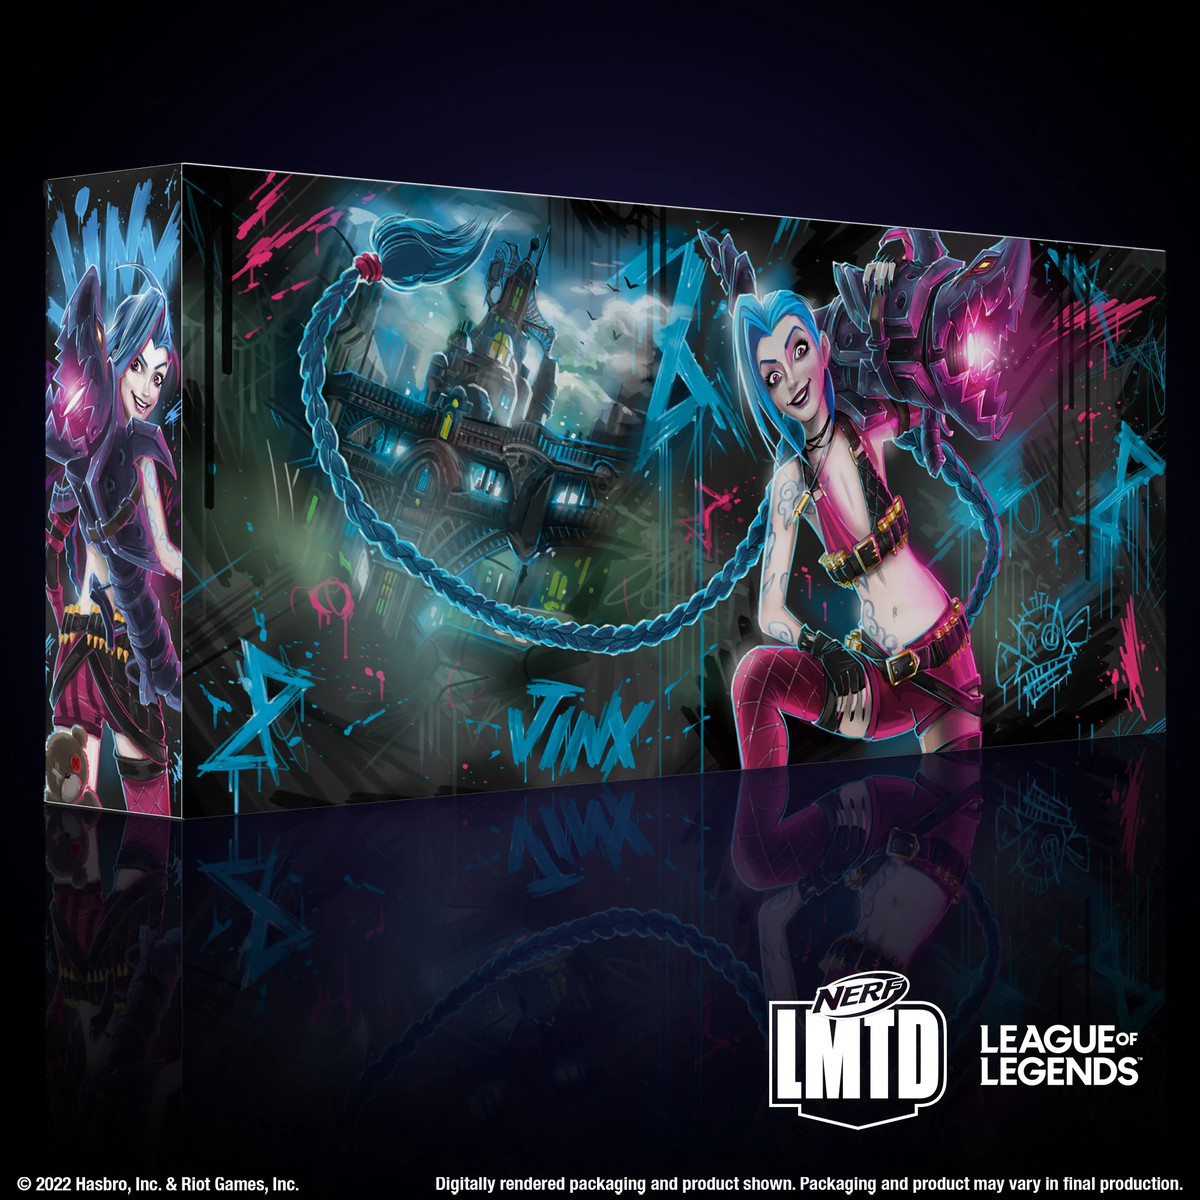 Il crossover League of Legends e Nerf LMTD per il blaster Fishbone di Jinx.  La box art mostra Jinx che sorride in modo maniacale alla telecamera mentre solleva Fishbones su una spalla.